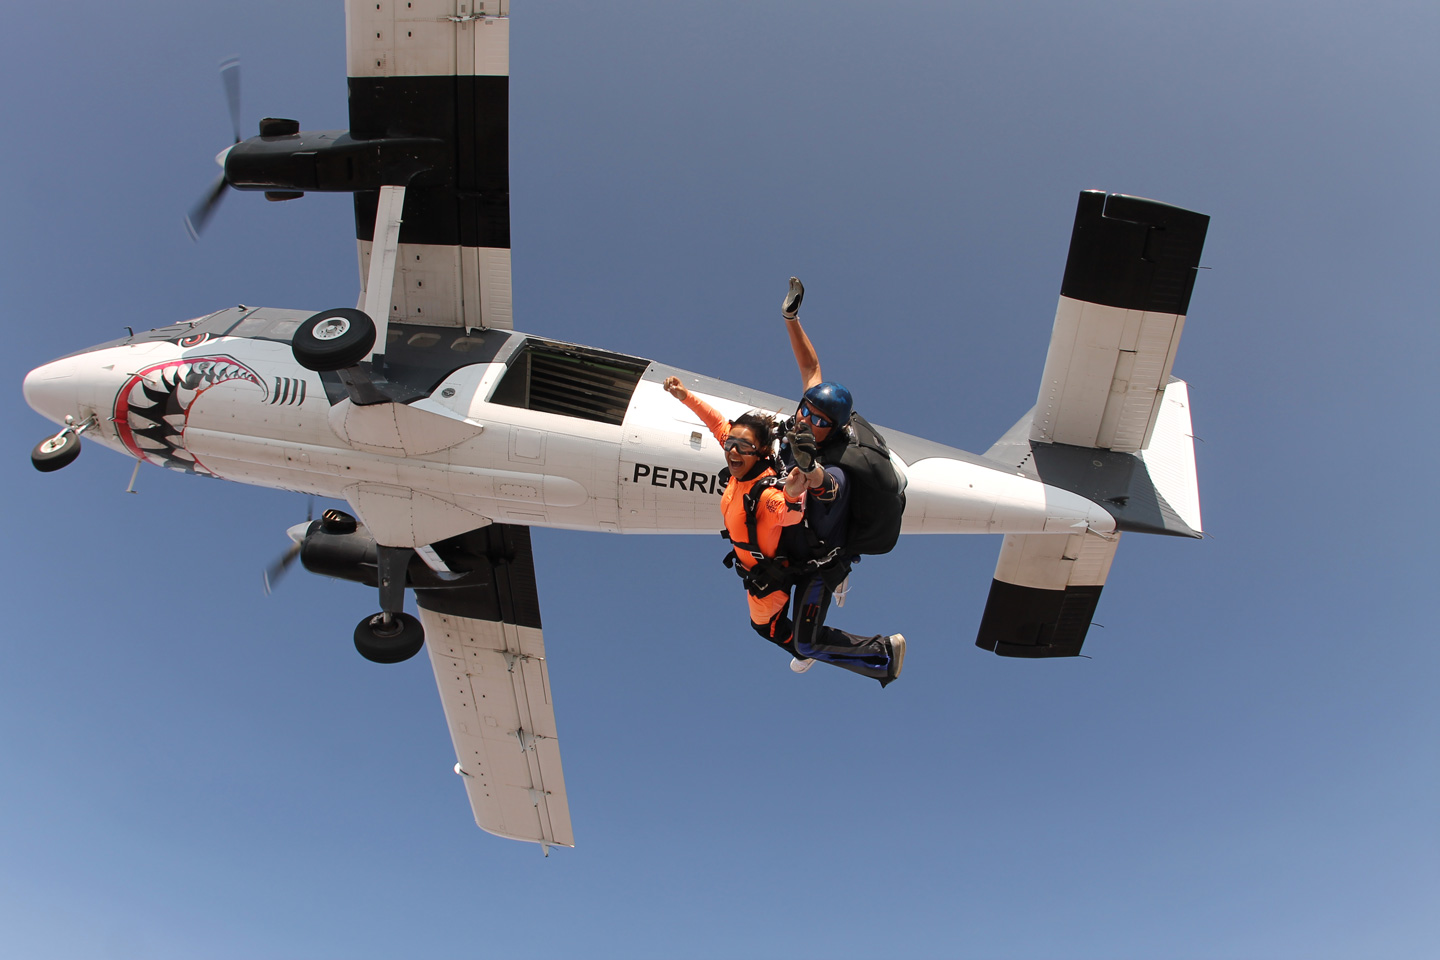 skydiving vs base